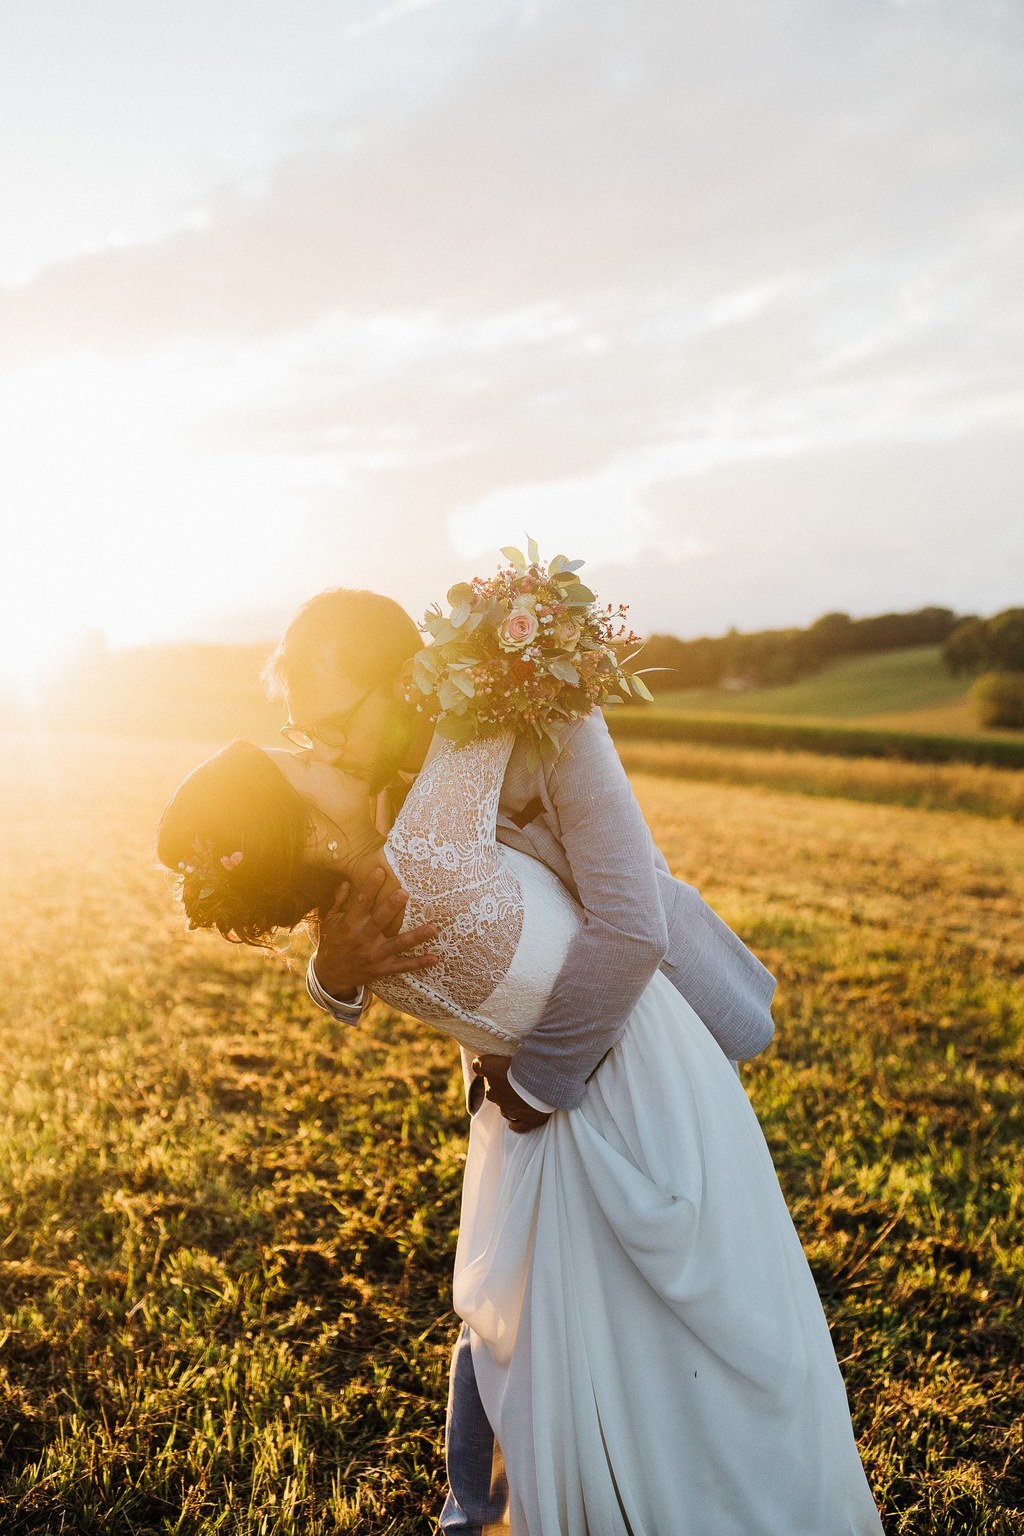 photographe mariage pau - domaine de tilh - couple coucher de soleil - emilie massal